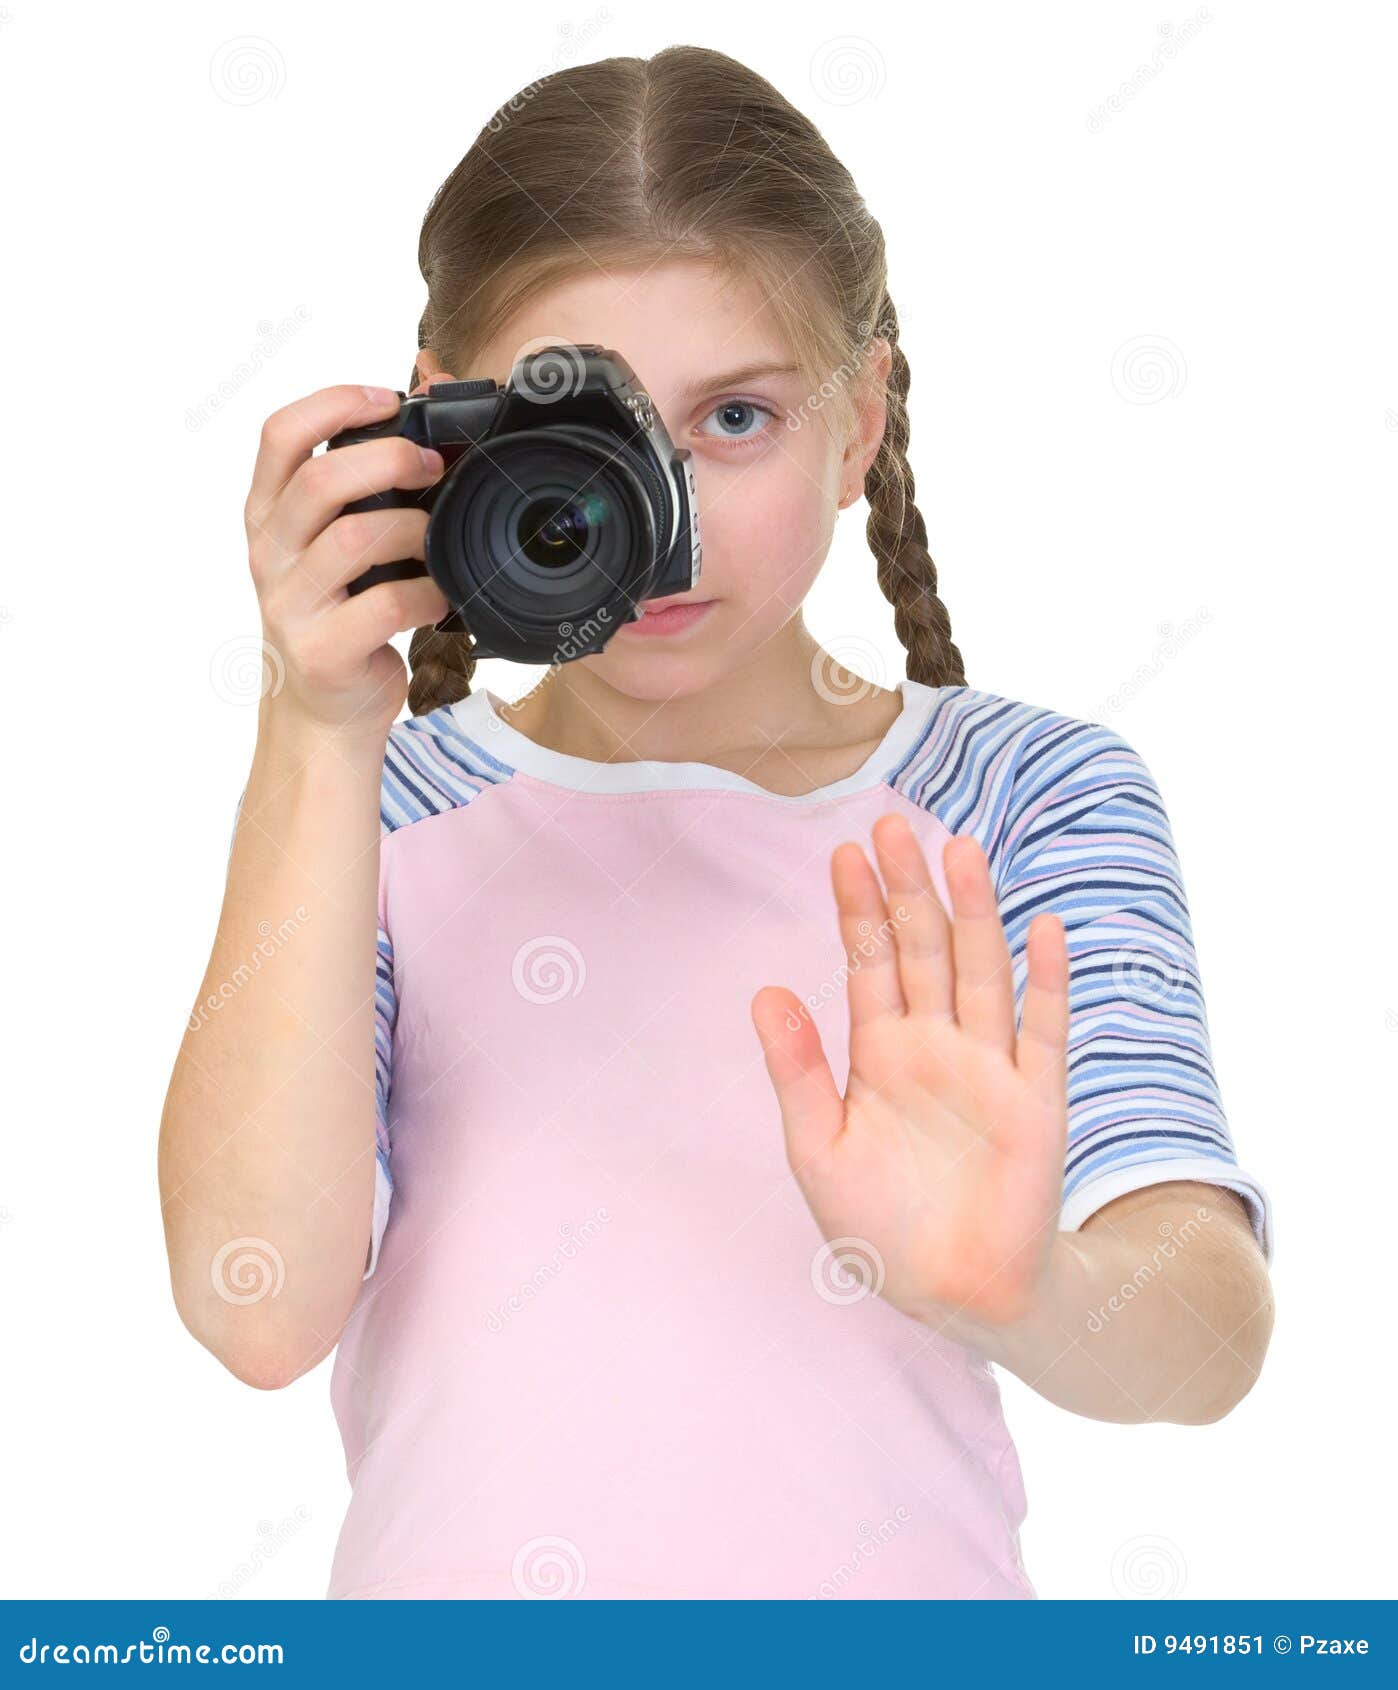 Стеснительная на камеру. Девочка с камерой. Девушка с видеокамерой в руках. Девушка держит камеру в руках. Девочка с камерой в руках.